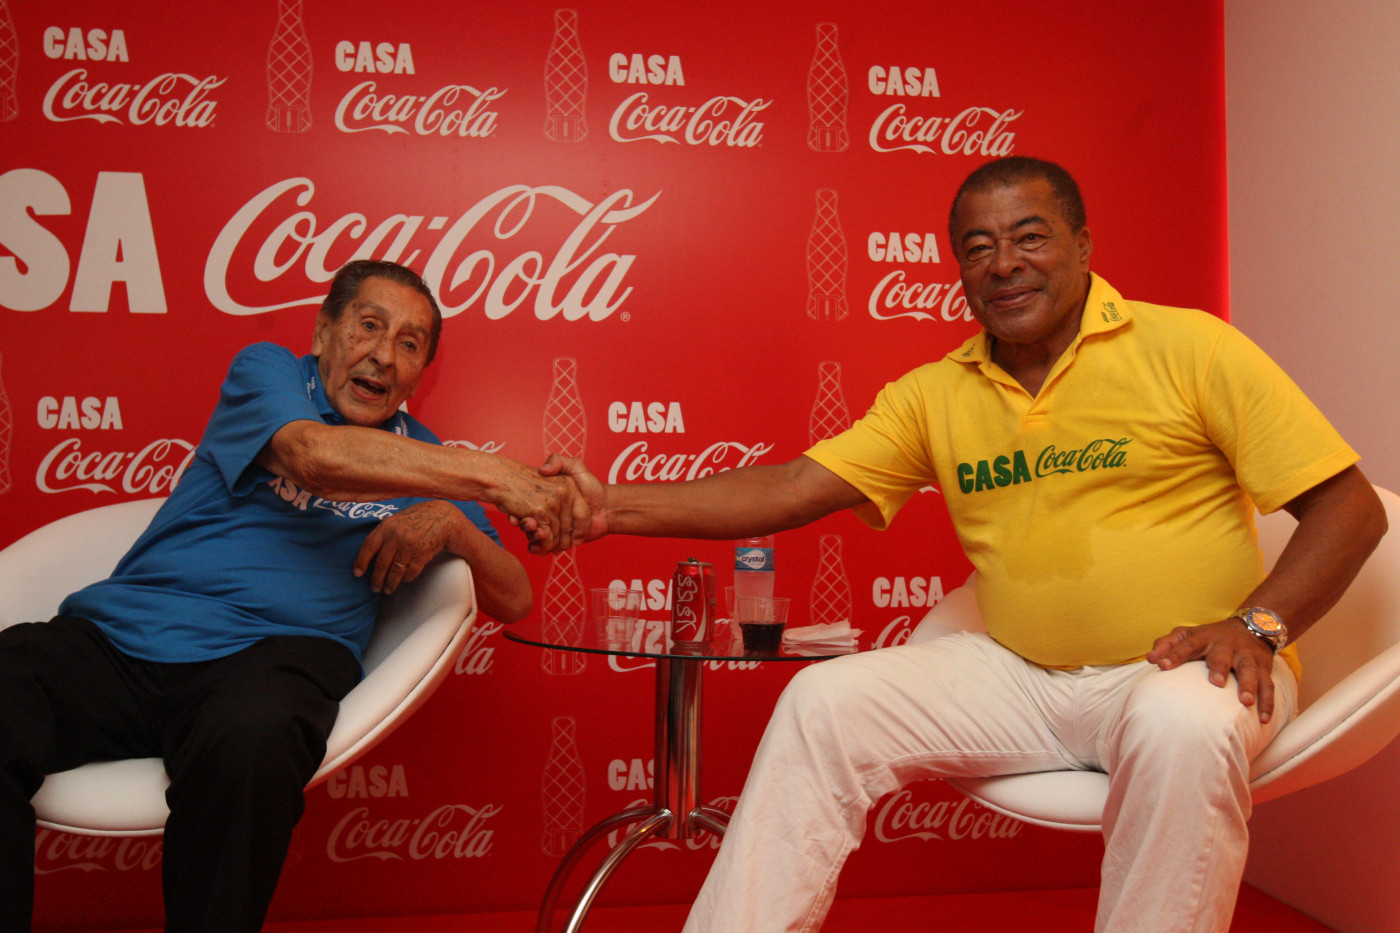 Dois homens idosos dando as mãos, um com a camiseta do Brasil e outro de camiseta azul